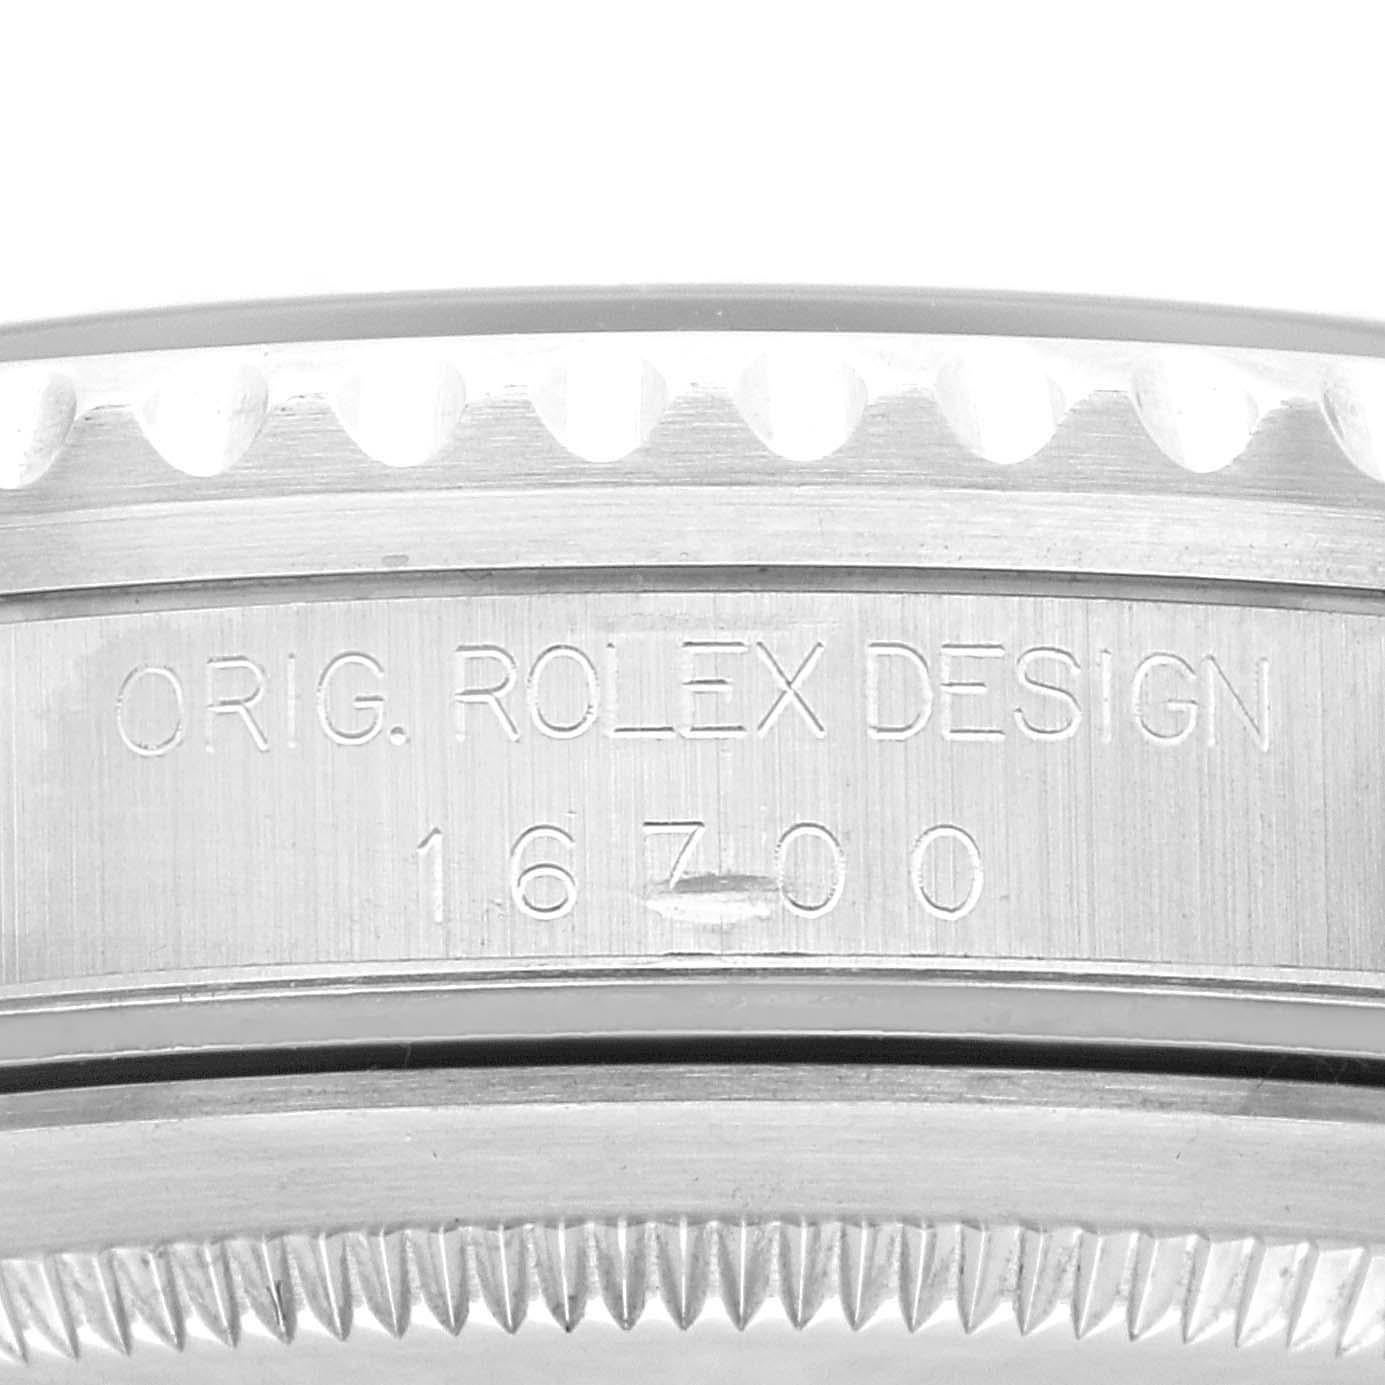 Rolex GMT Master 40mm Blue Red Pepsi Bezel Steel Mens Watch 16700. Mouvement automatique à remontage automatique, officiellement certifié chronomètre. Boîtier en acier inoxydable de 40 mm de diamètre. Logo Rolex sur la couronne. Lunette tournante